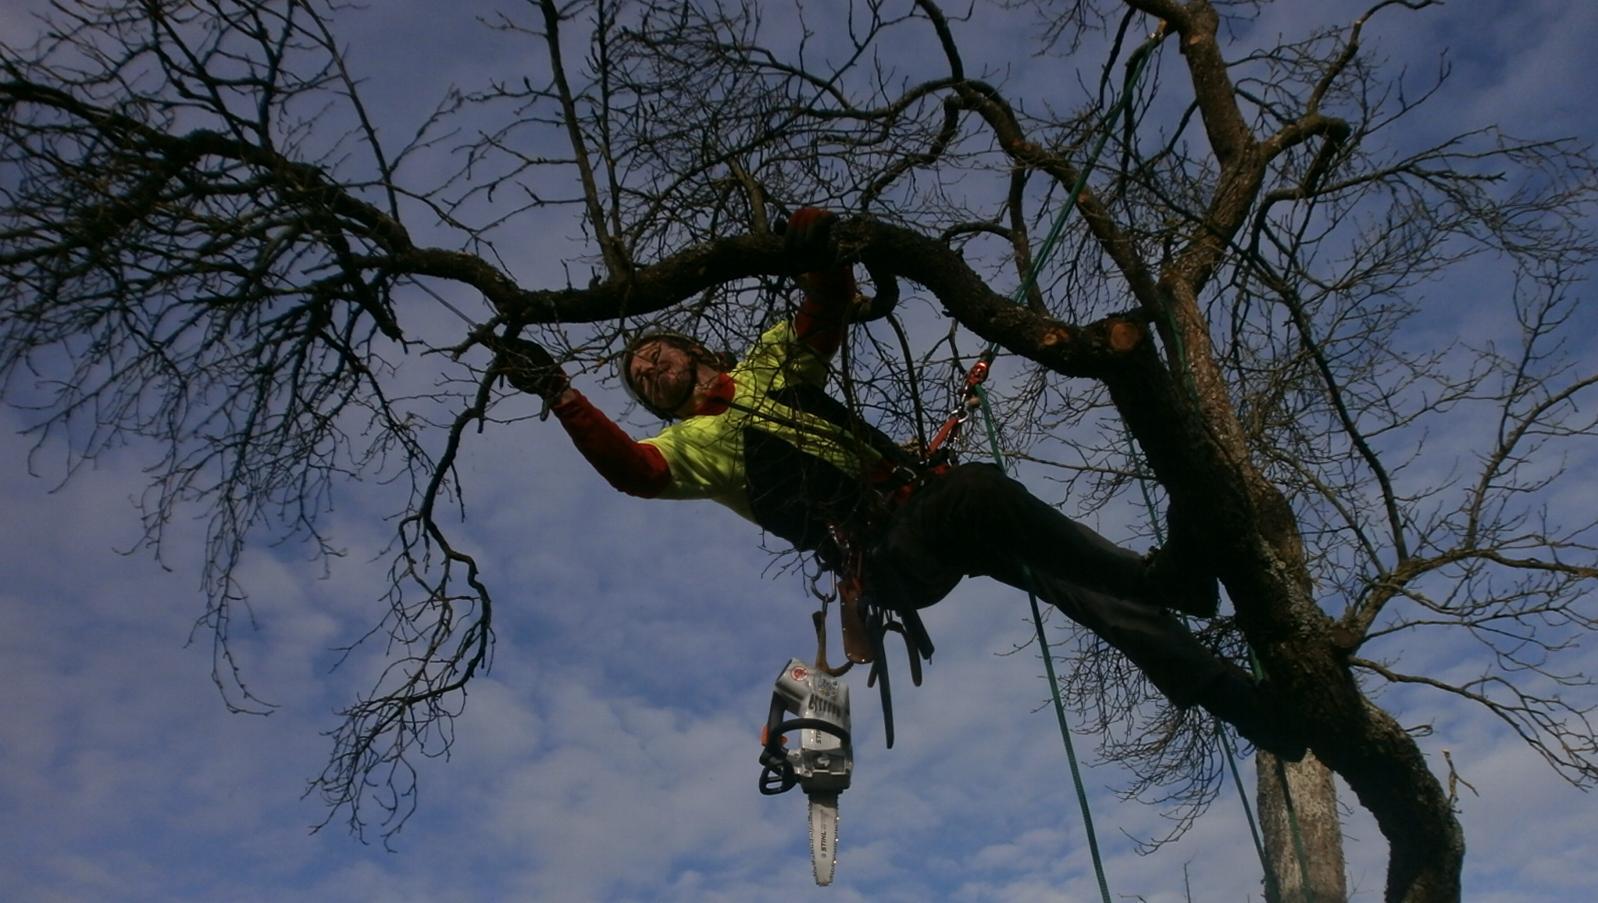 Baumpfleger in Seilklettertechnik in einer Zwetschge, Froschperspektive